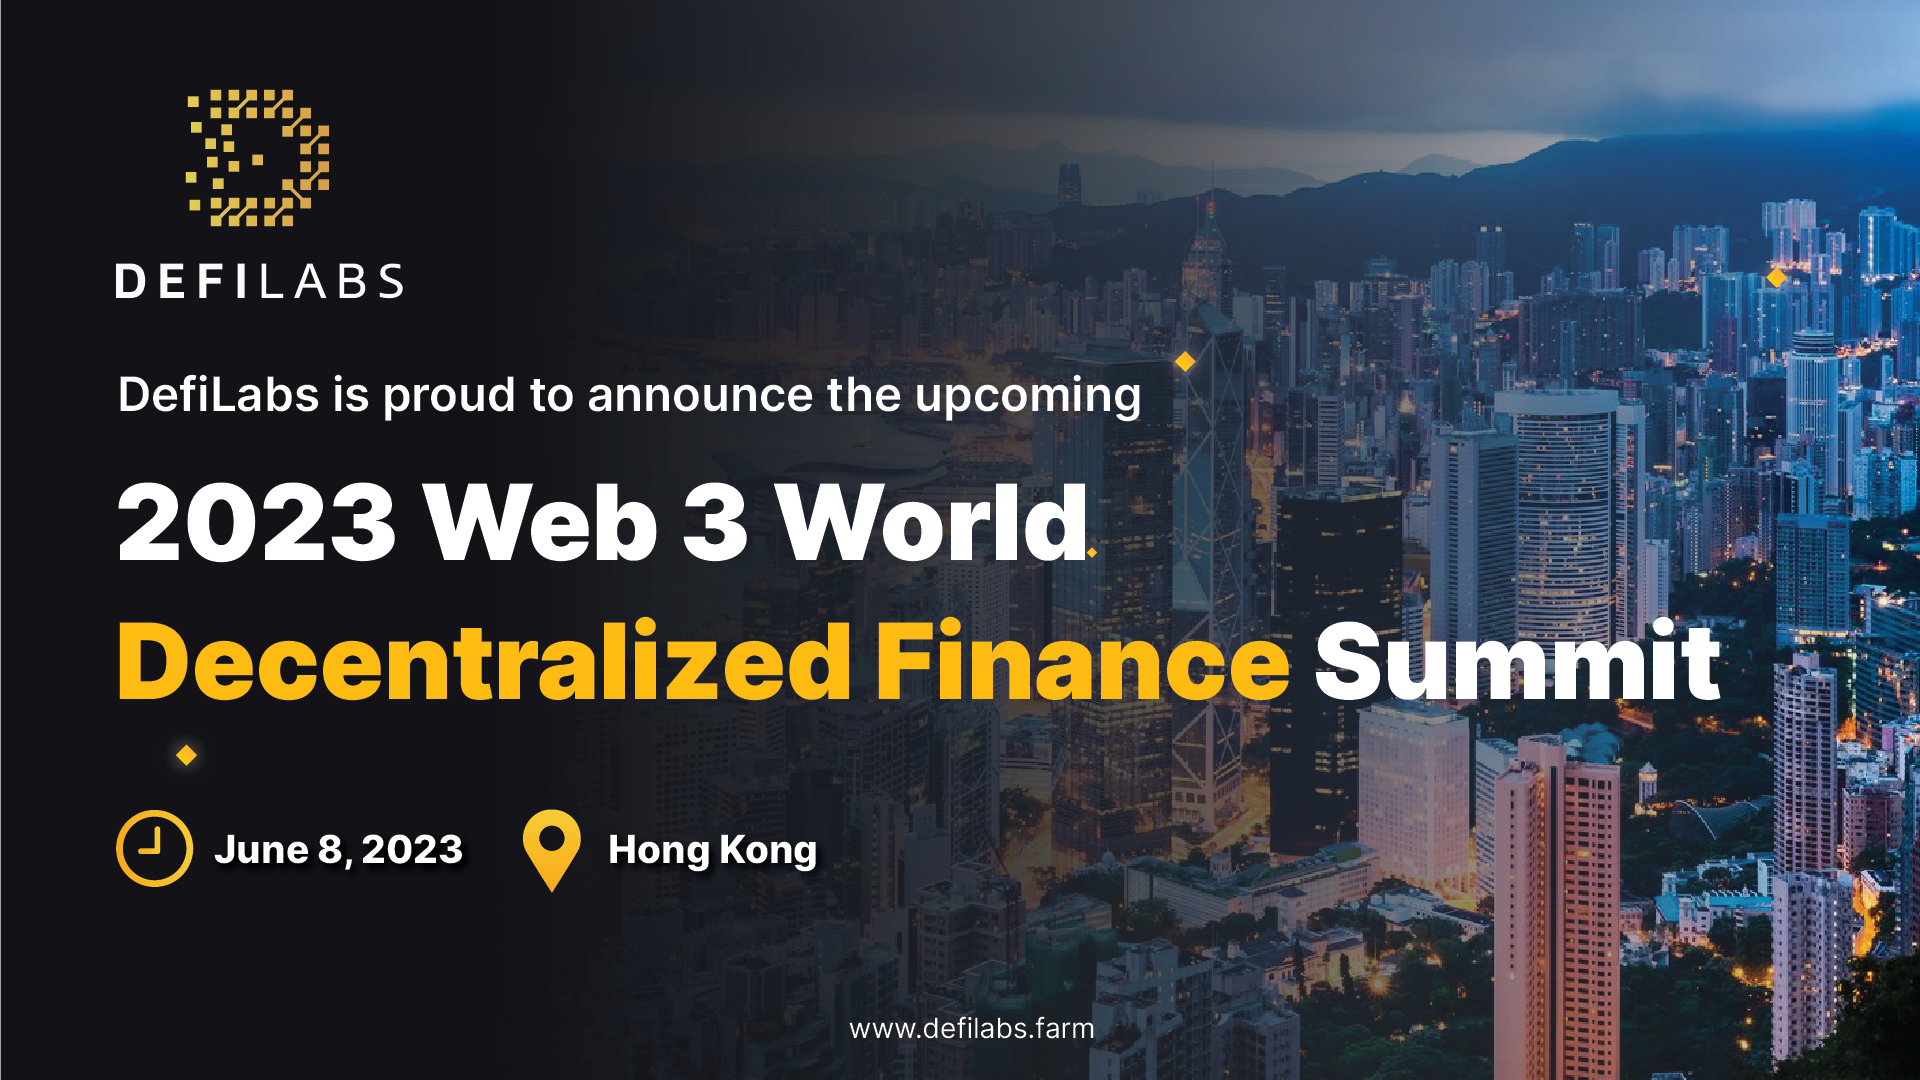 ブロックチェーン技術 × AIの新時代の資産運用サービス
「DefiLabs(ディーファイラボ)」が
『WEB3 WORLD DECENTRALIZED FINANCE SUMMIT』を
6/8に香港で開催